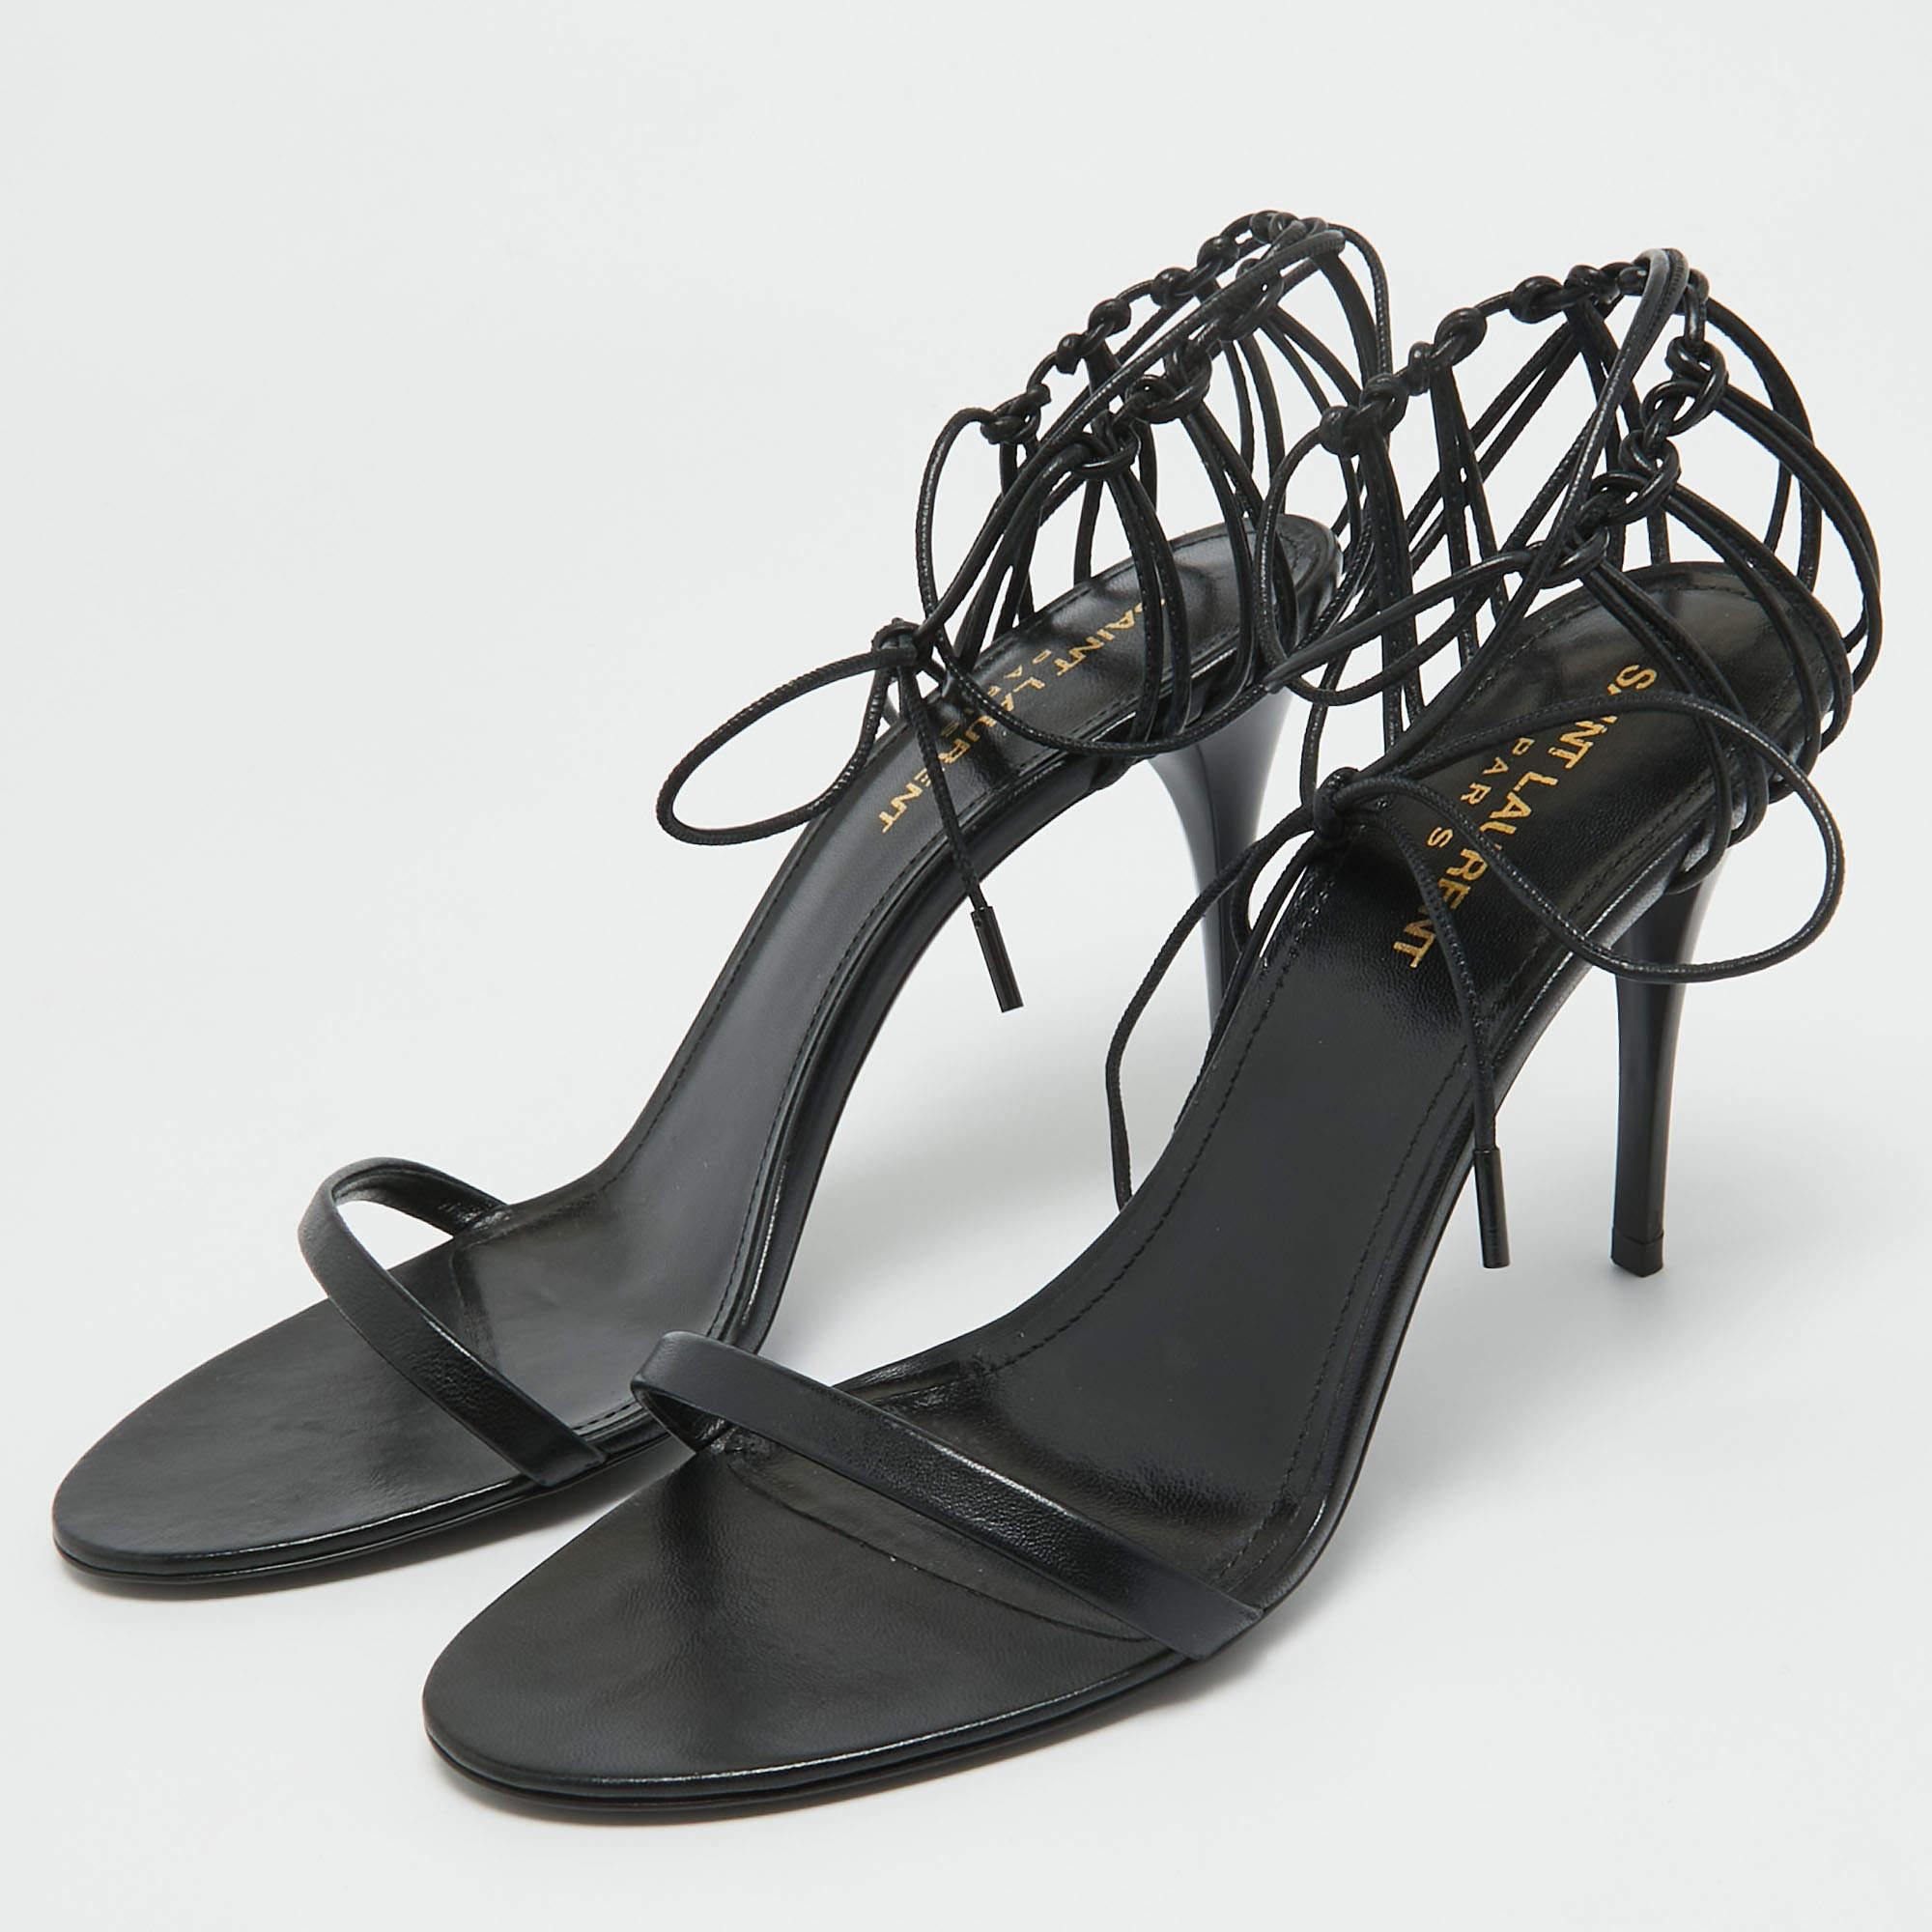 Saint Laurent Black Leather Ankle Strap Sandals Size 38 In Good Condition For Sale In Dubai, Al Qouz 2